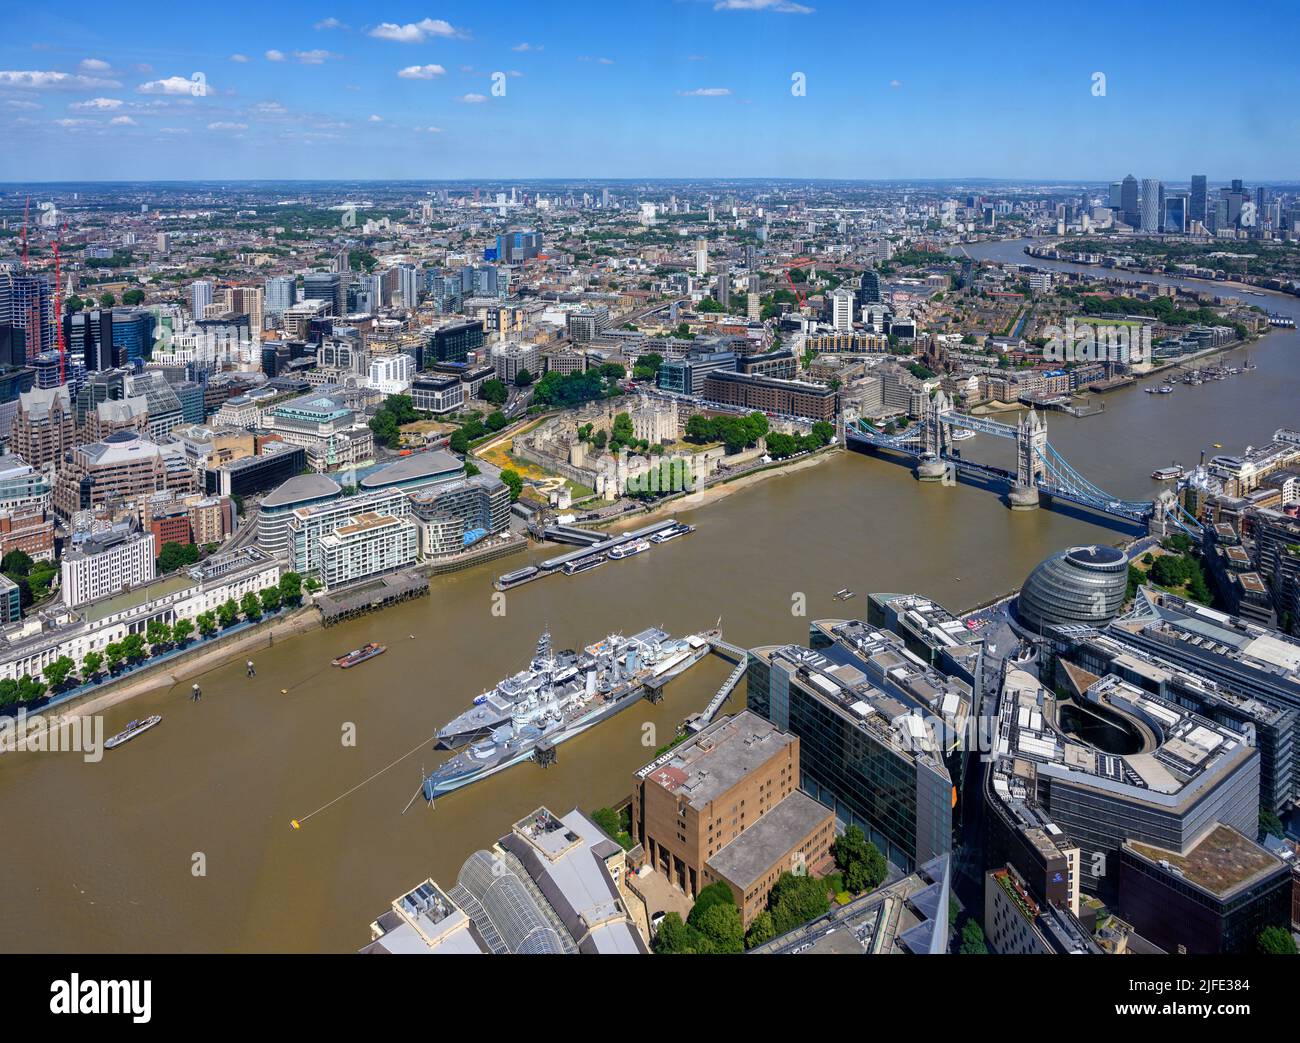 Vue aérienne sur Londres, en direction de Tower Bridge, depuis la Shard Viewing Gallery, Londres, Angleterre, Royaume-Uni Banque D'Images